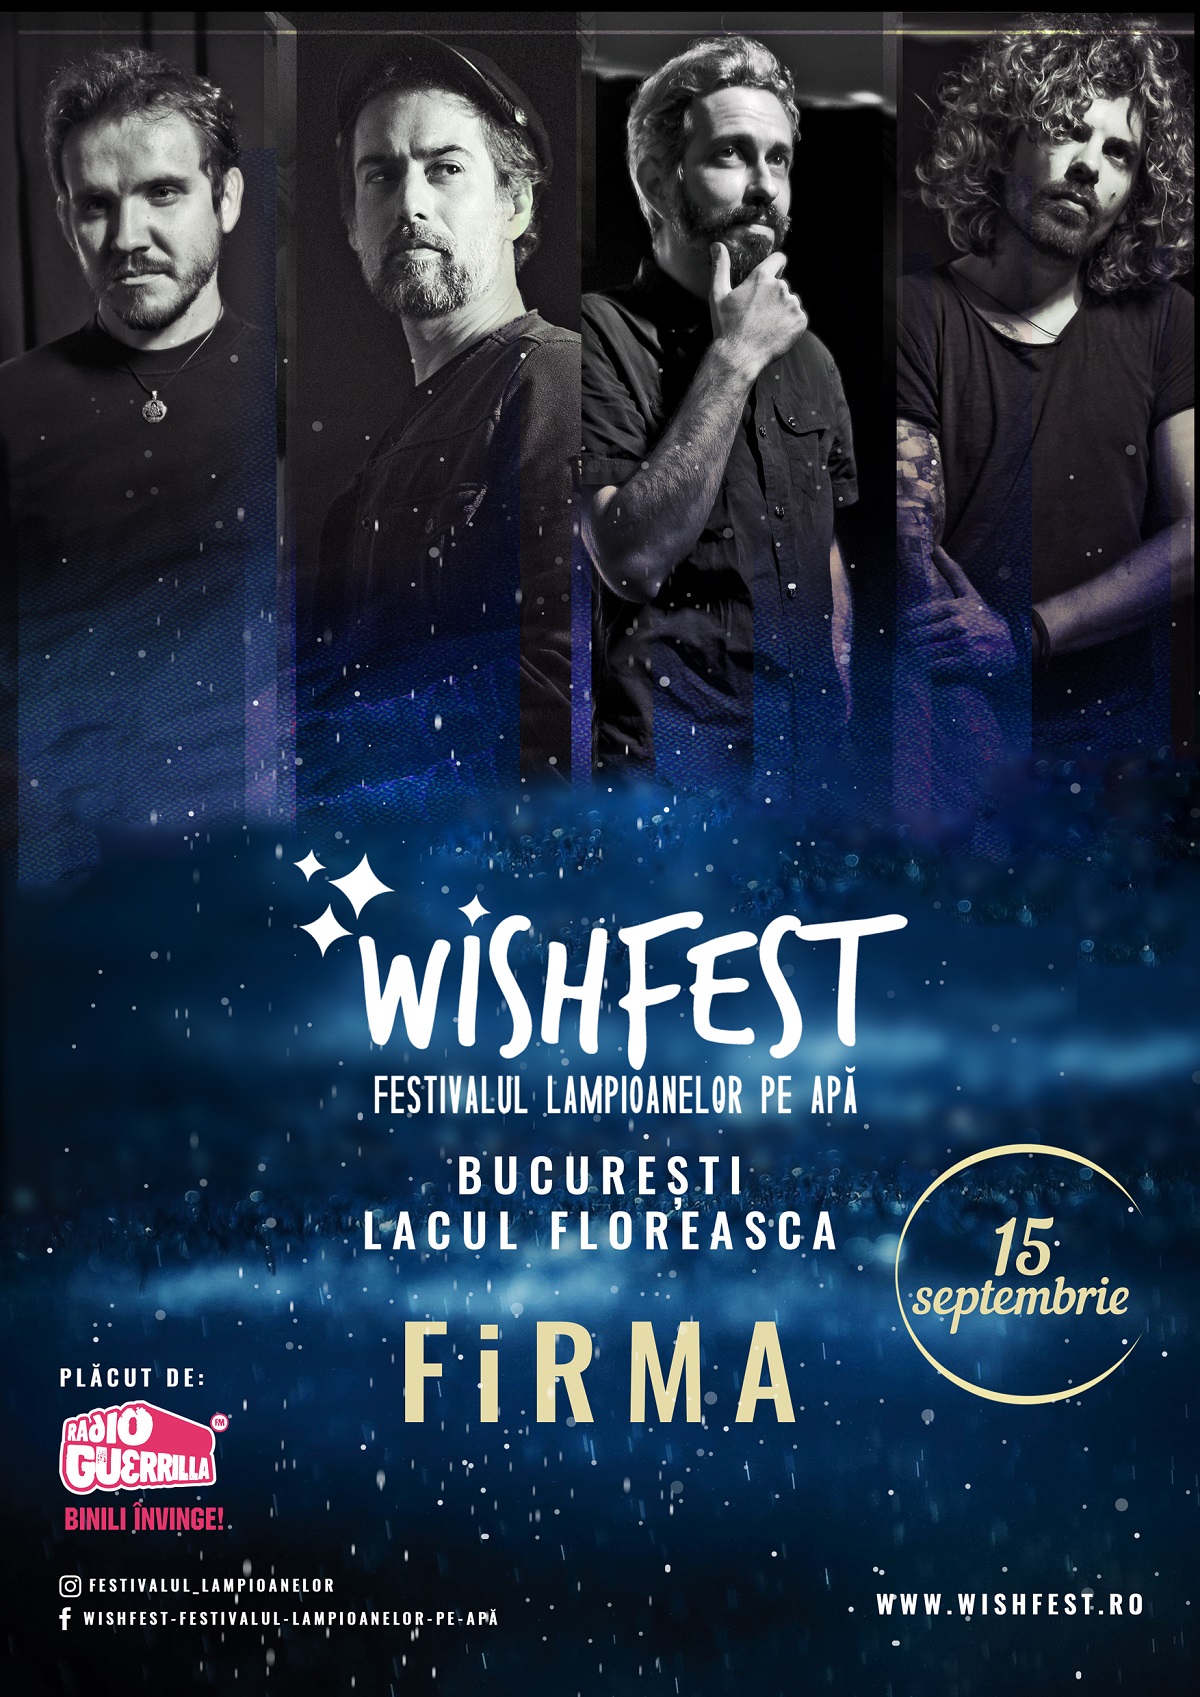 WishFest, primul festival dedicat lampioanelor pe apa, in Bucuresti, intre 14 – 15 septembrie